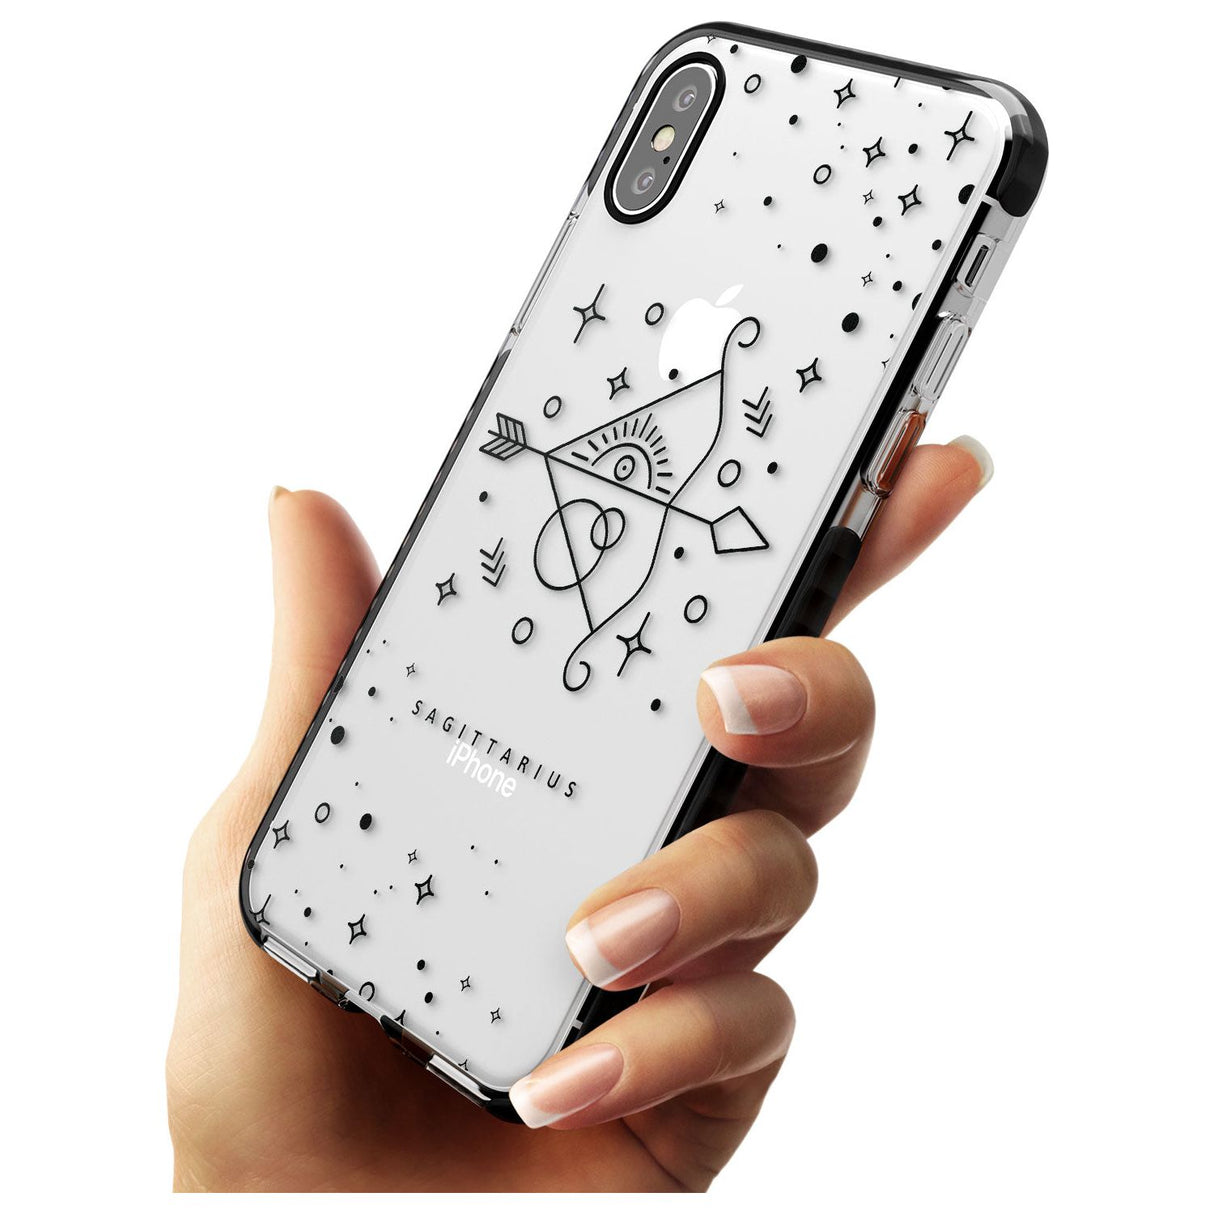 Sagittarius Emblem - Transparent Design Black Impact Phone Case for iPhone X XS Max XR